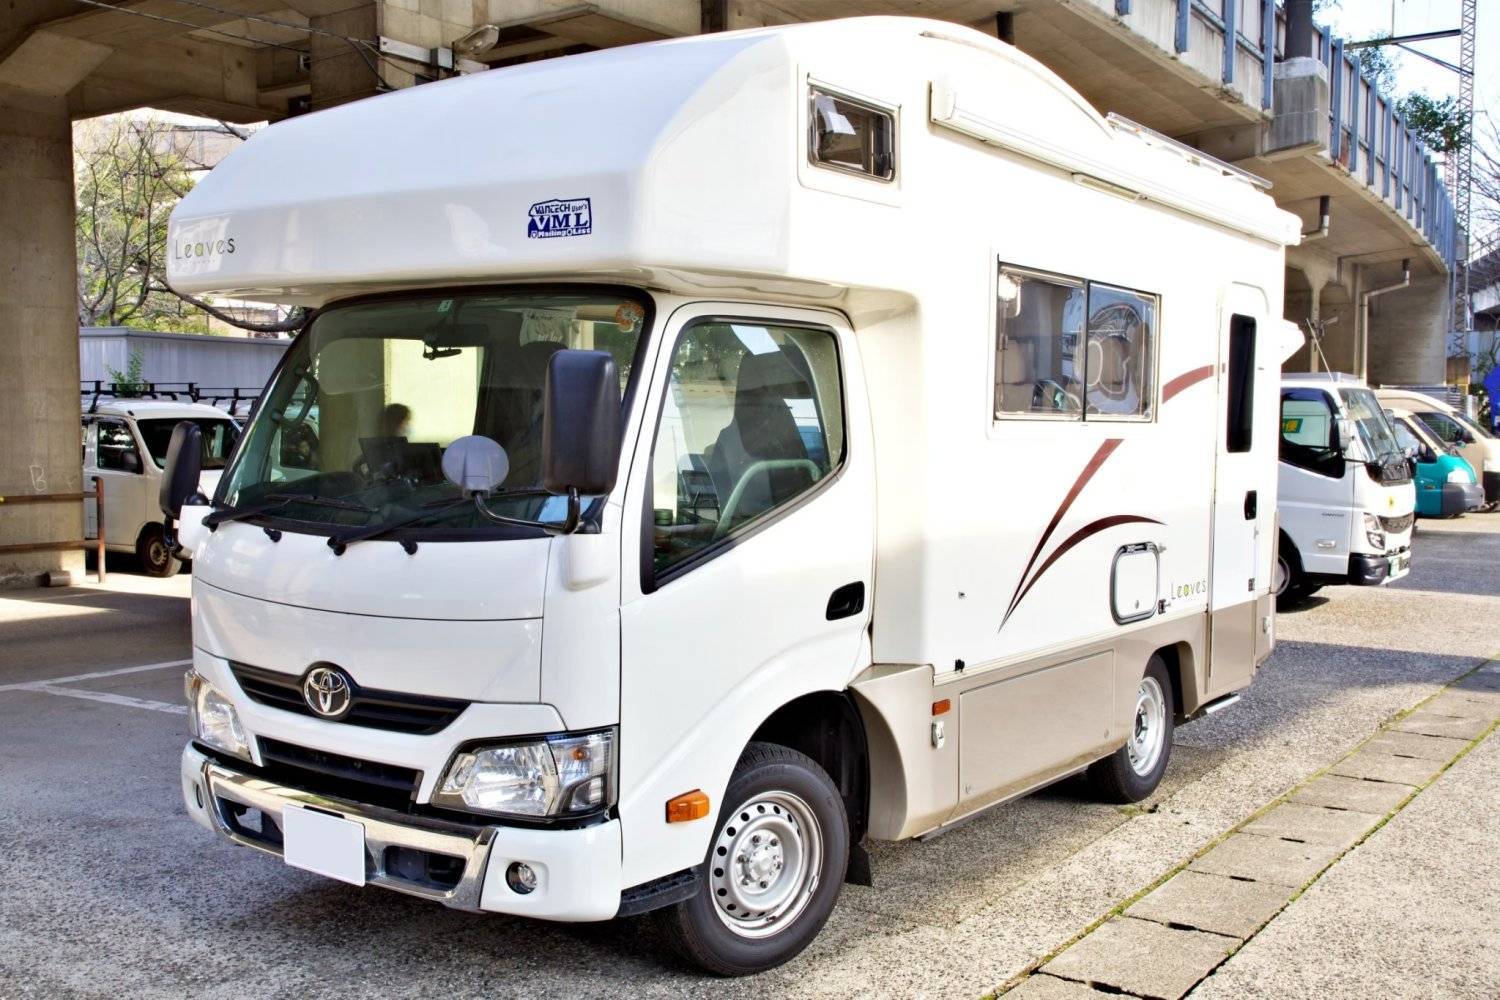 【Tokyo】Japan 6ppl RV Caravan 24 hours Rental Experience(JTMS2)